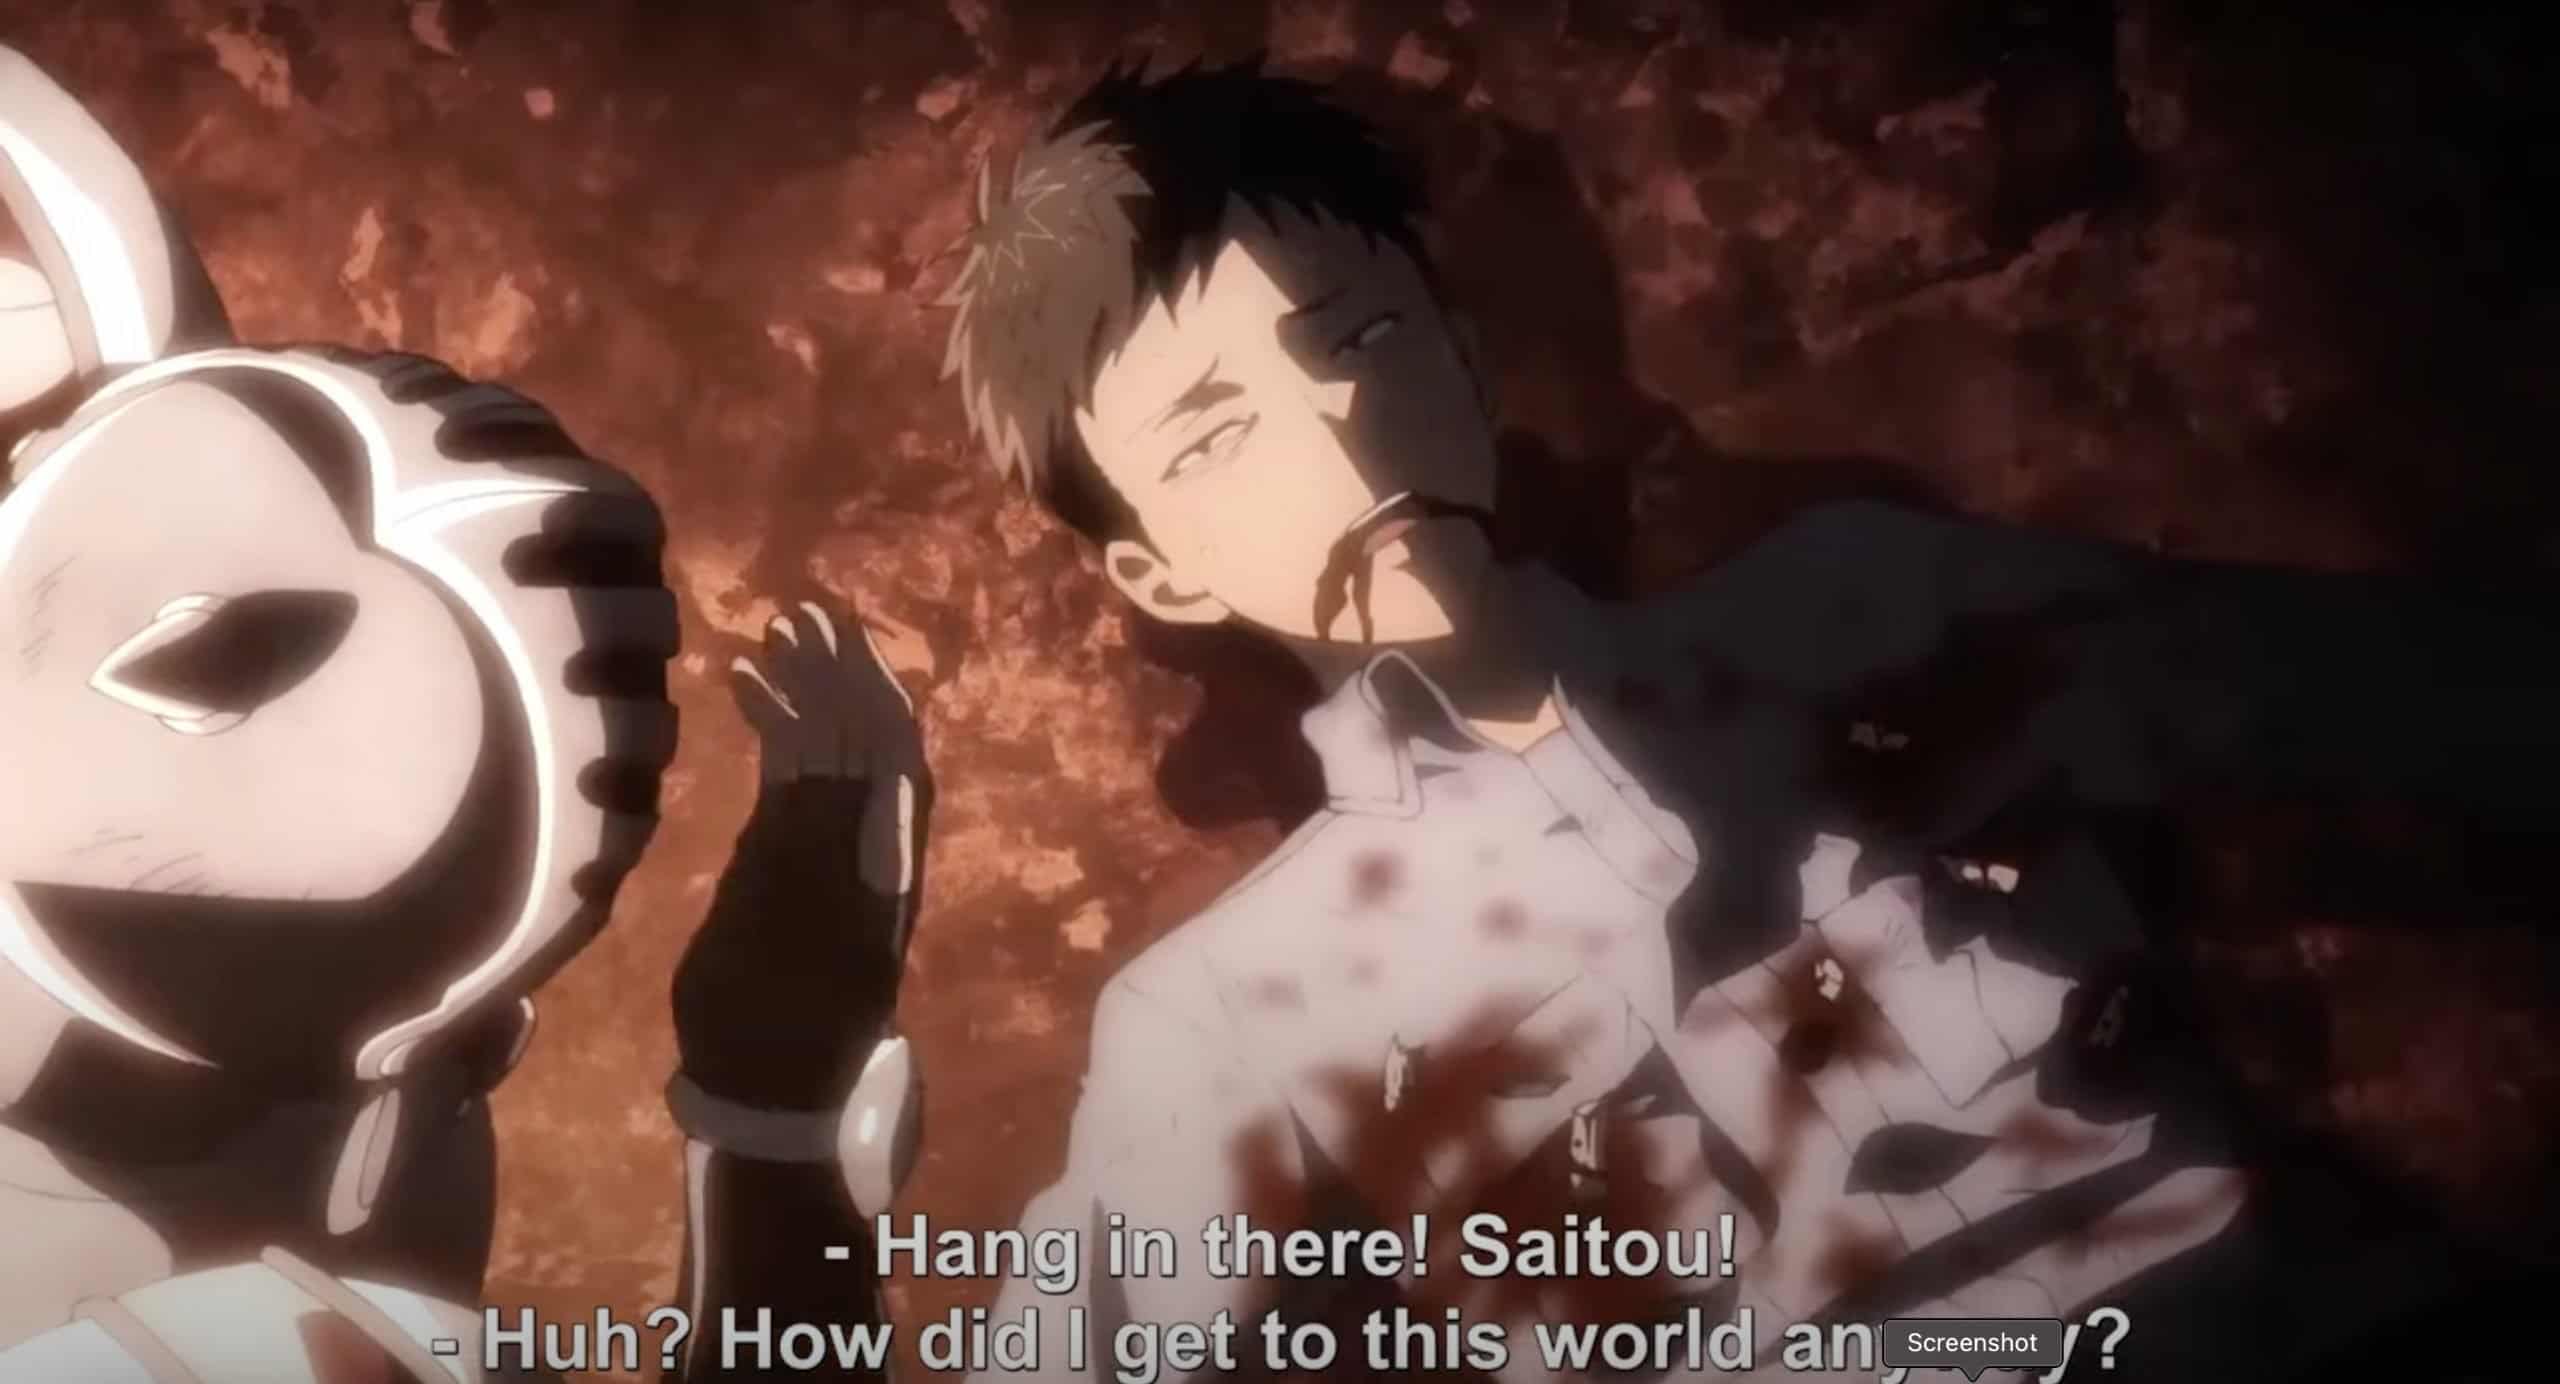 Handyman Saitou in Another World Episode 6 Release Date: Summoning a Powerful Dark Spirit